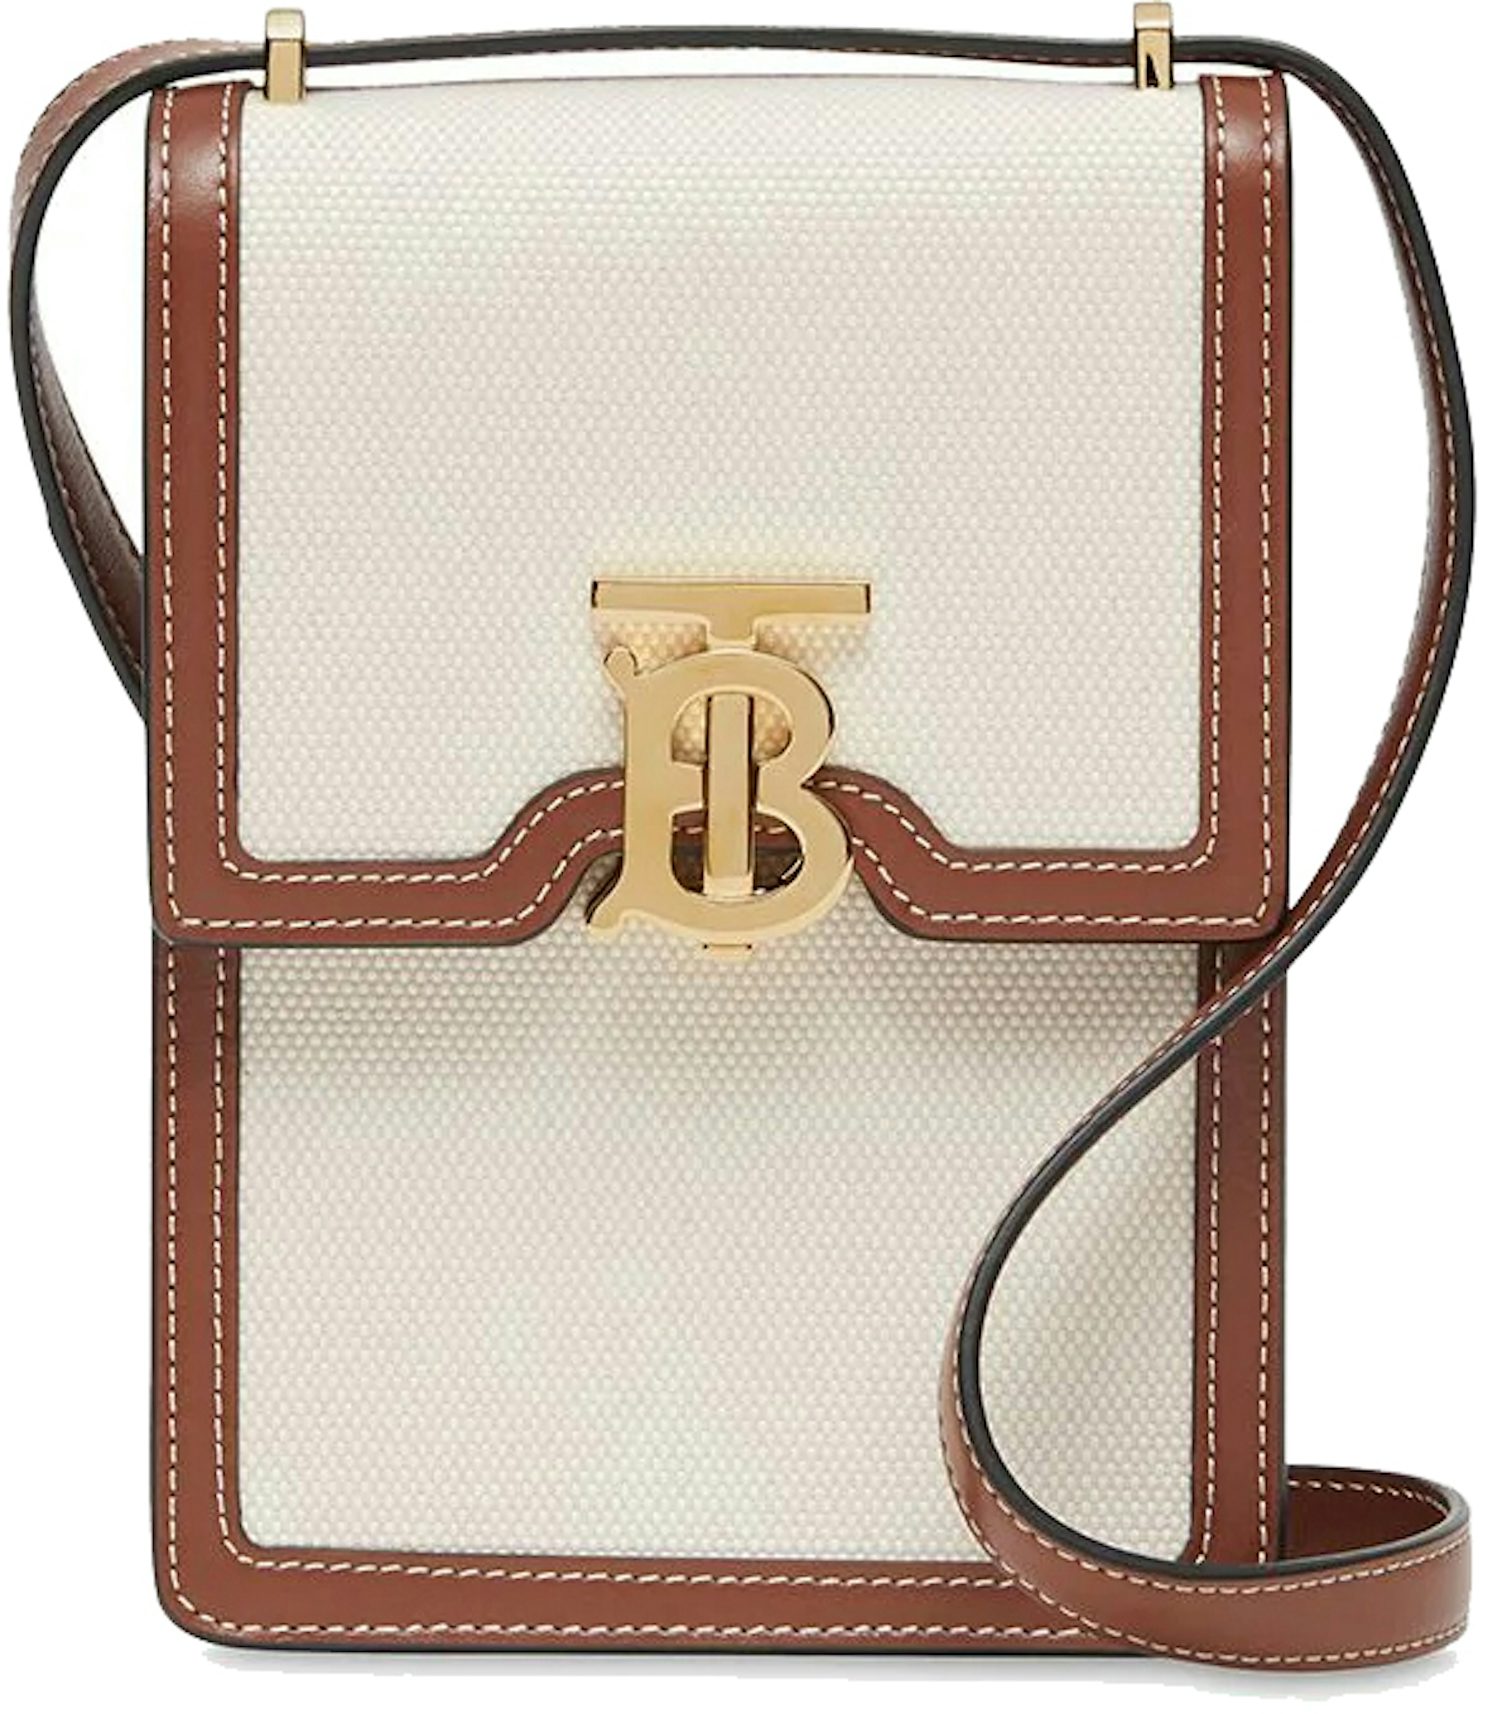 Burberry Robin TB Monogram Leather Shoulder Bag